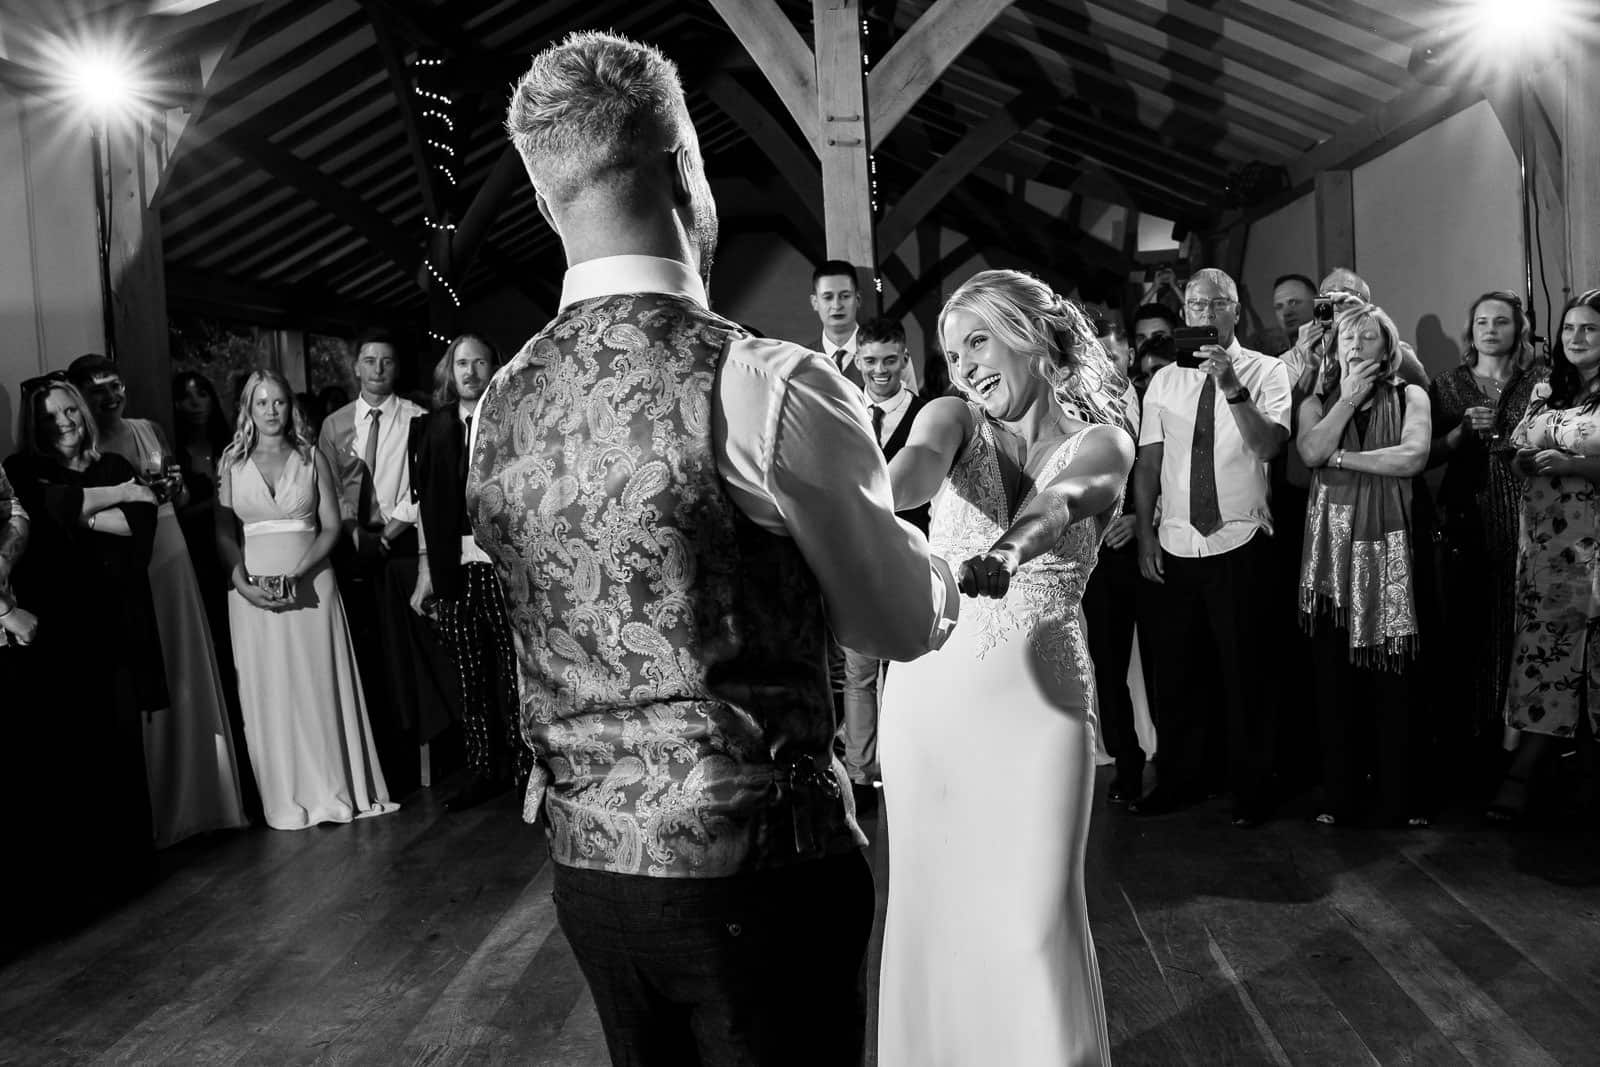 Dance floor at Dodford Manor Wedding